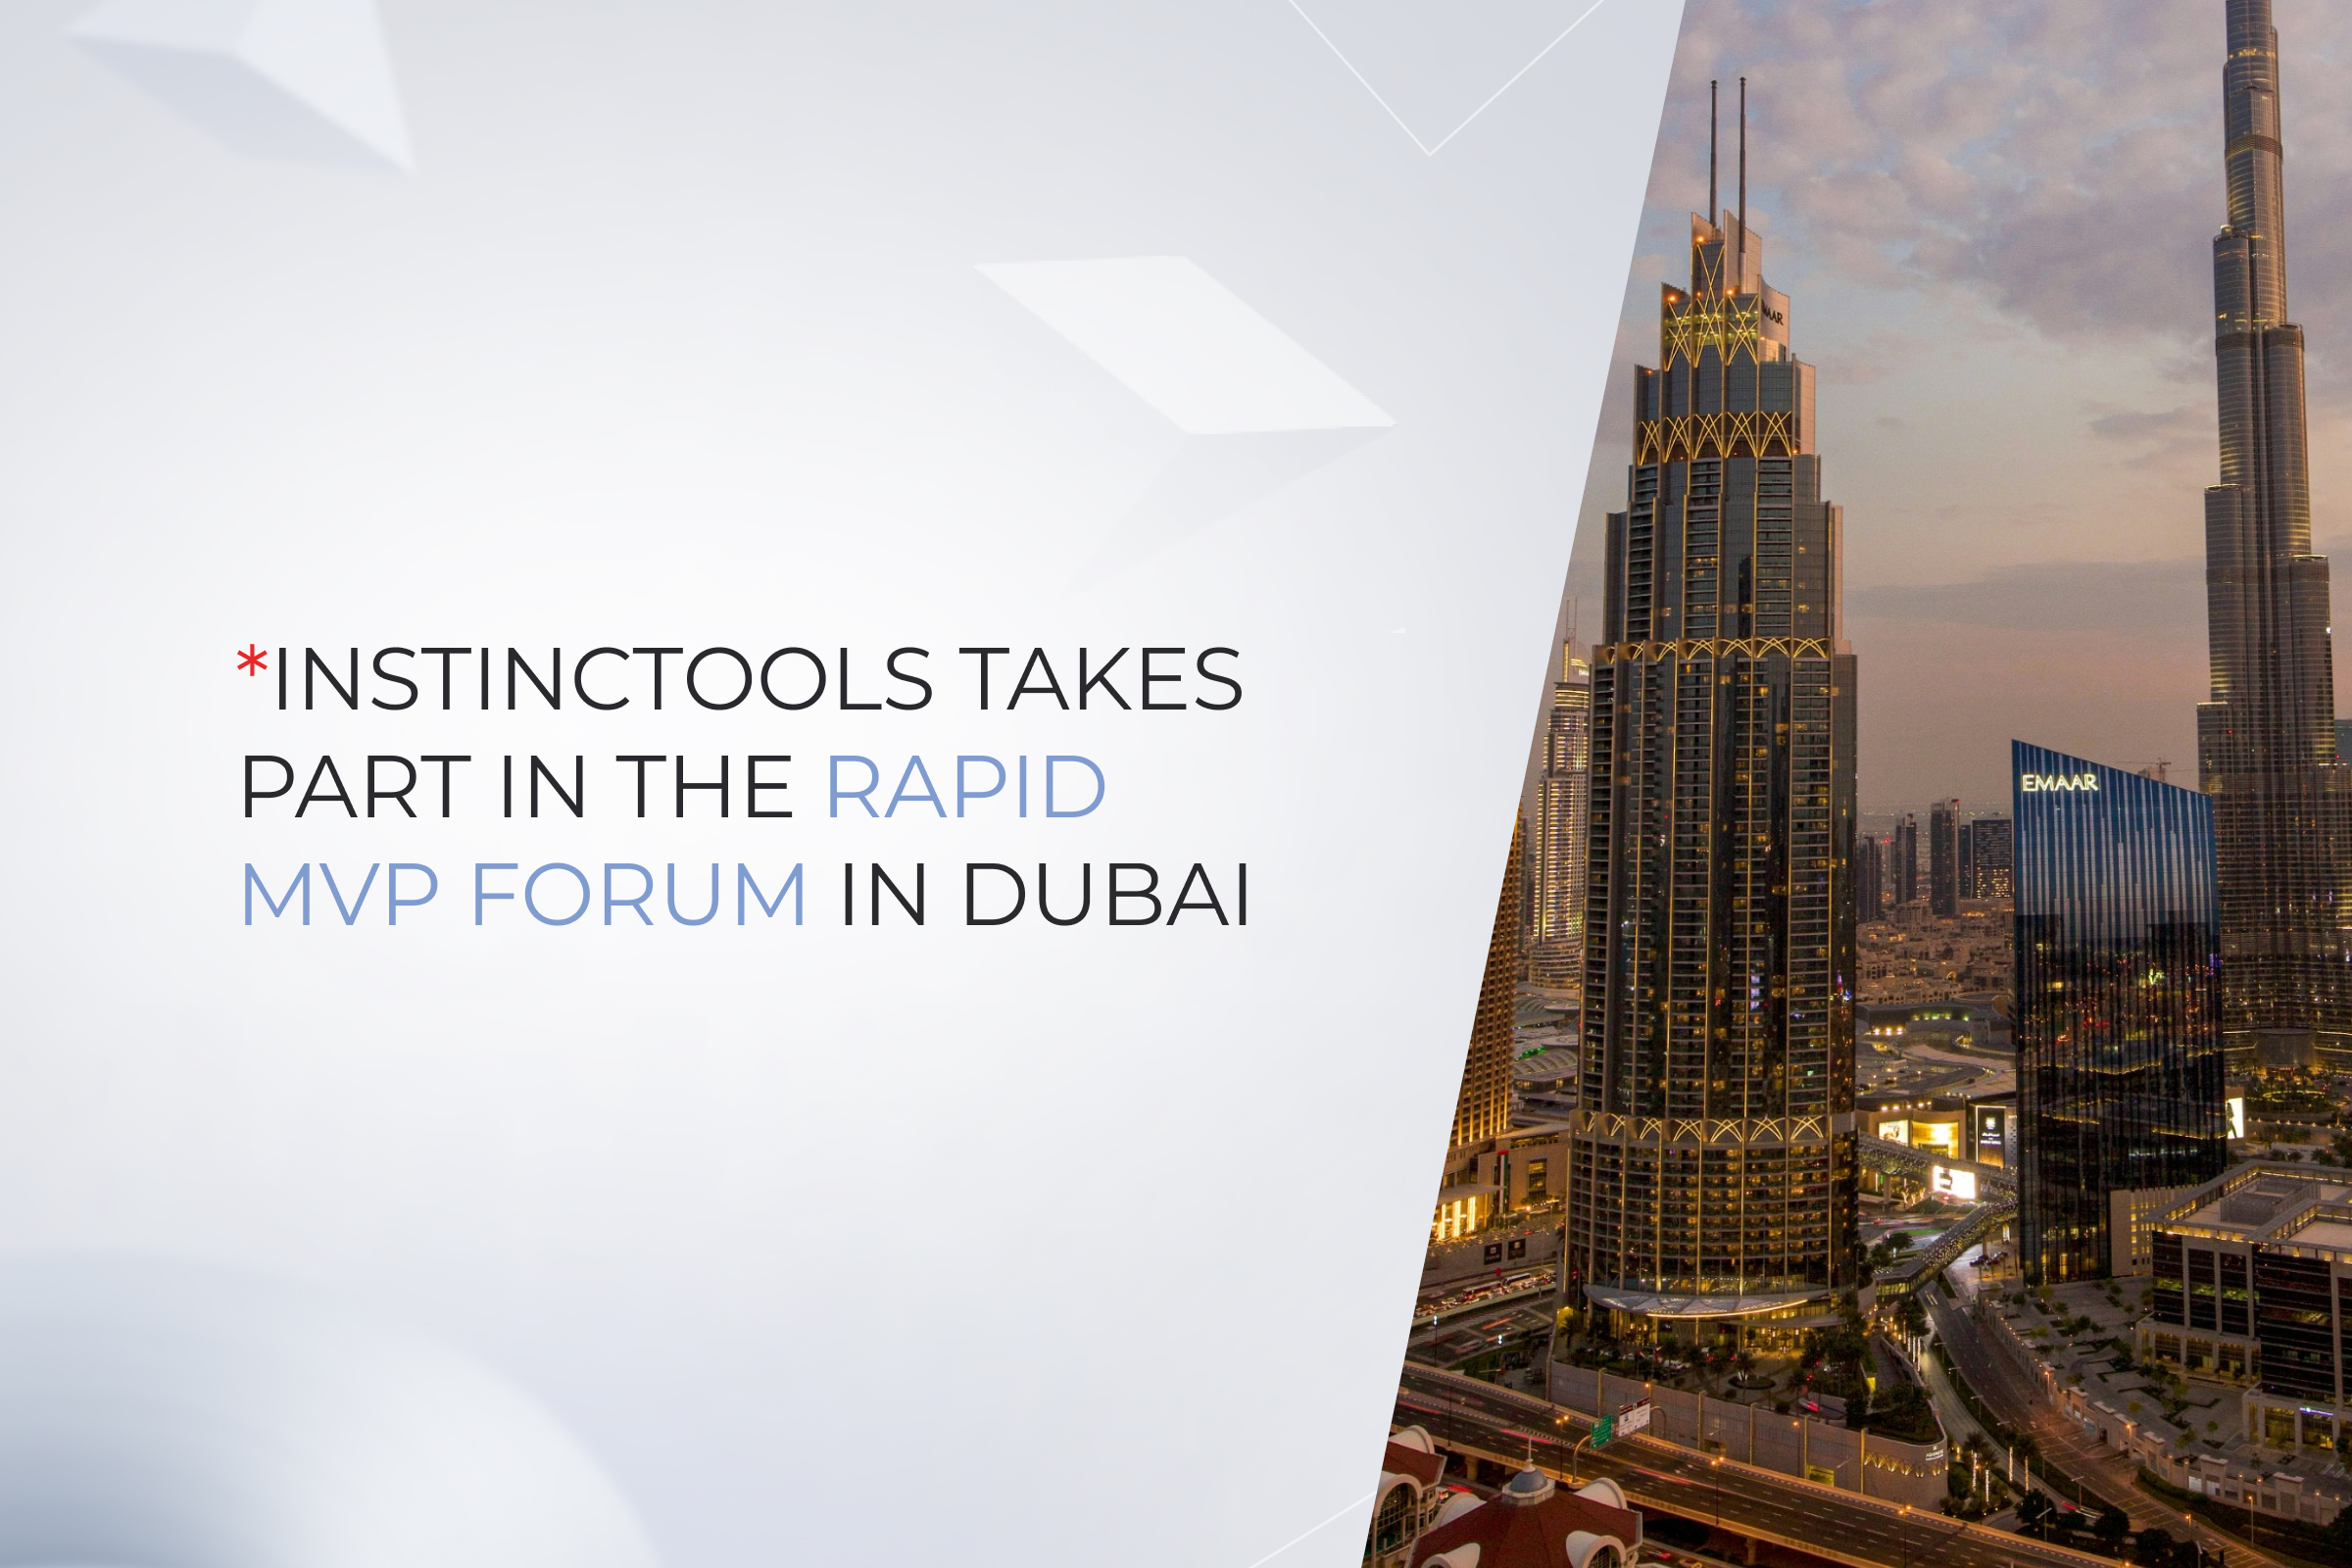 Instinctools takes part in the Rapid MVP Forum in Dubai